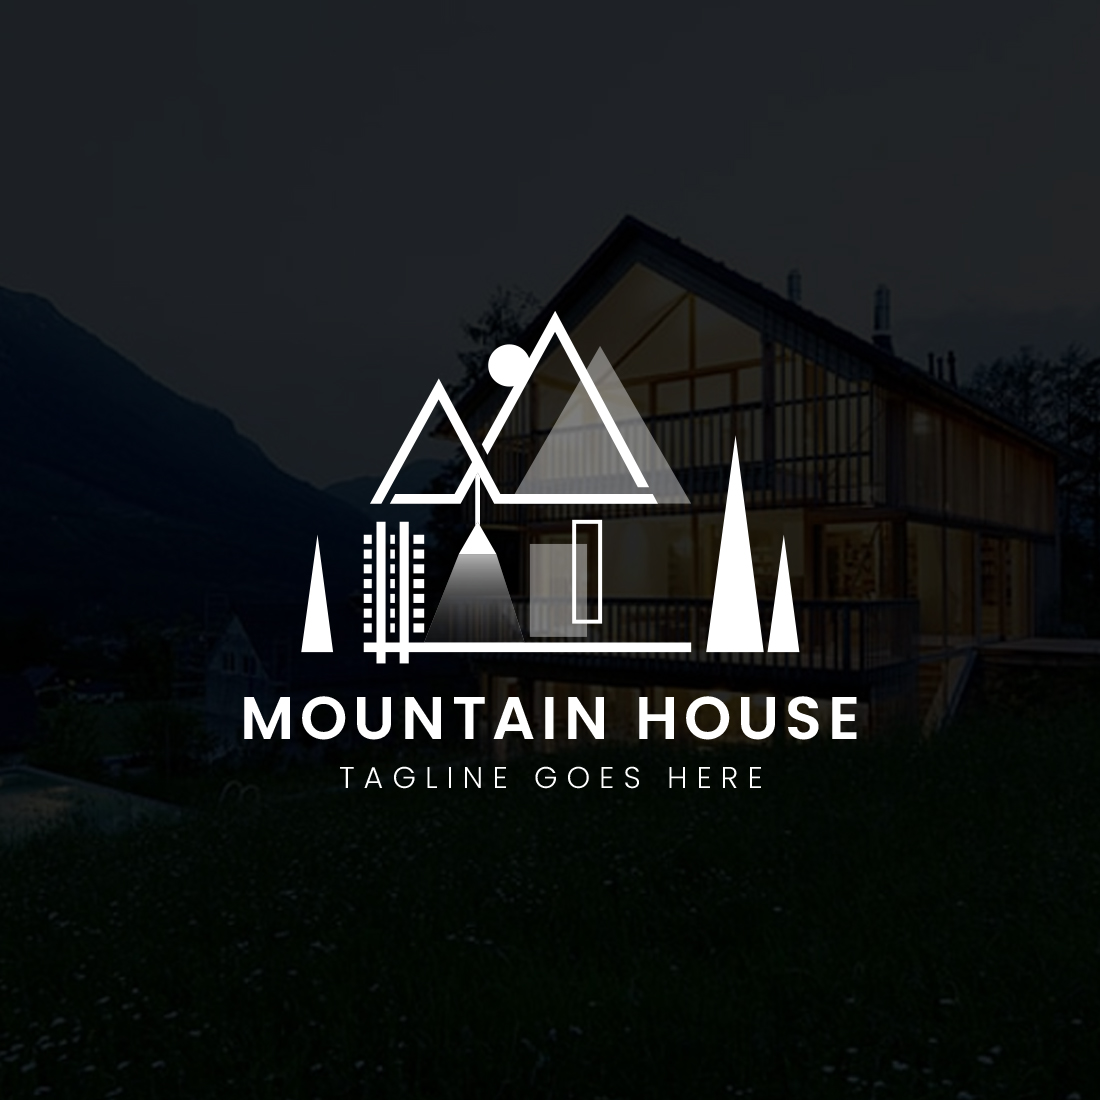 Mountain house logo cover image.